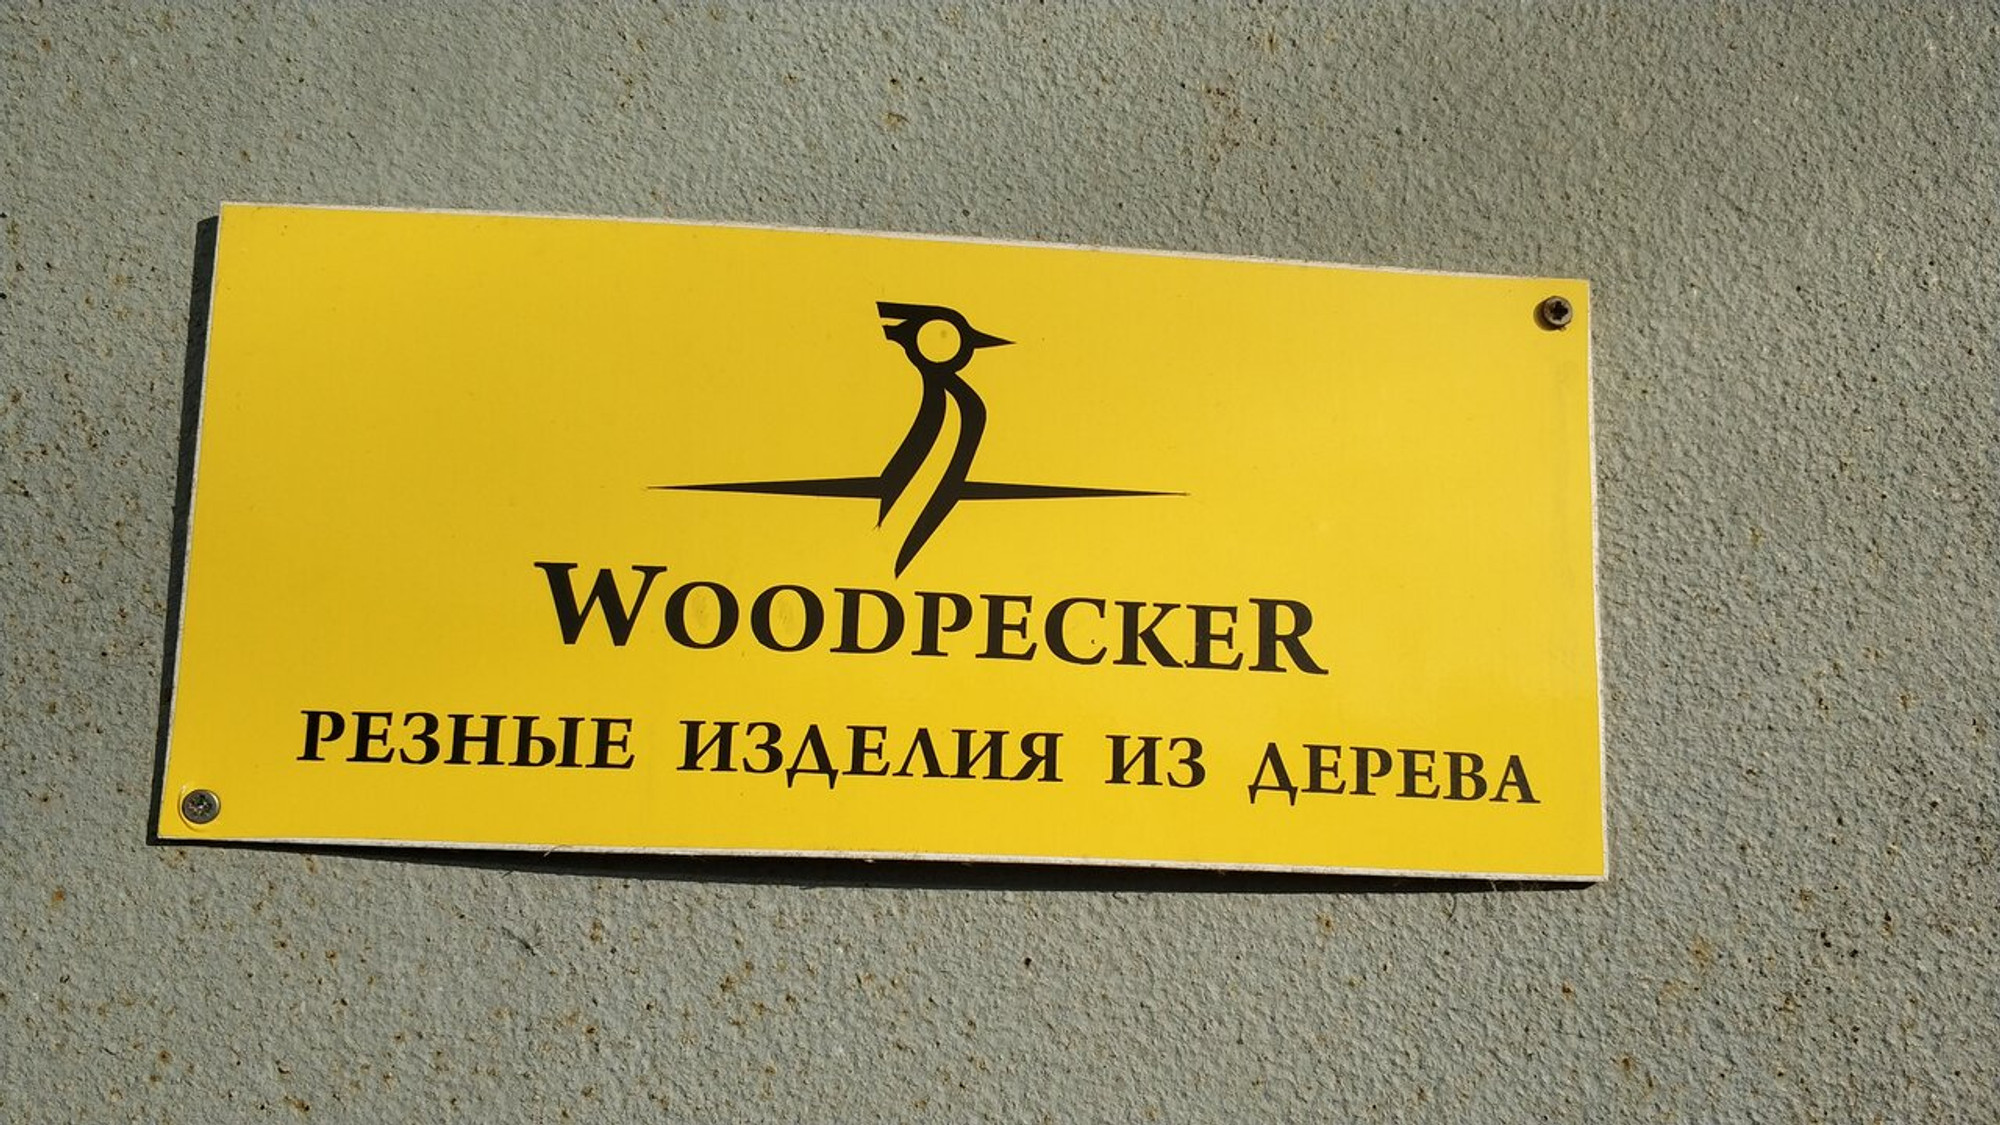 Woodpecker (Художественная мастерская)